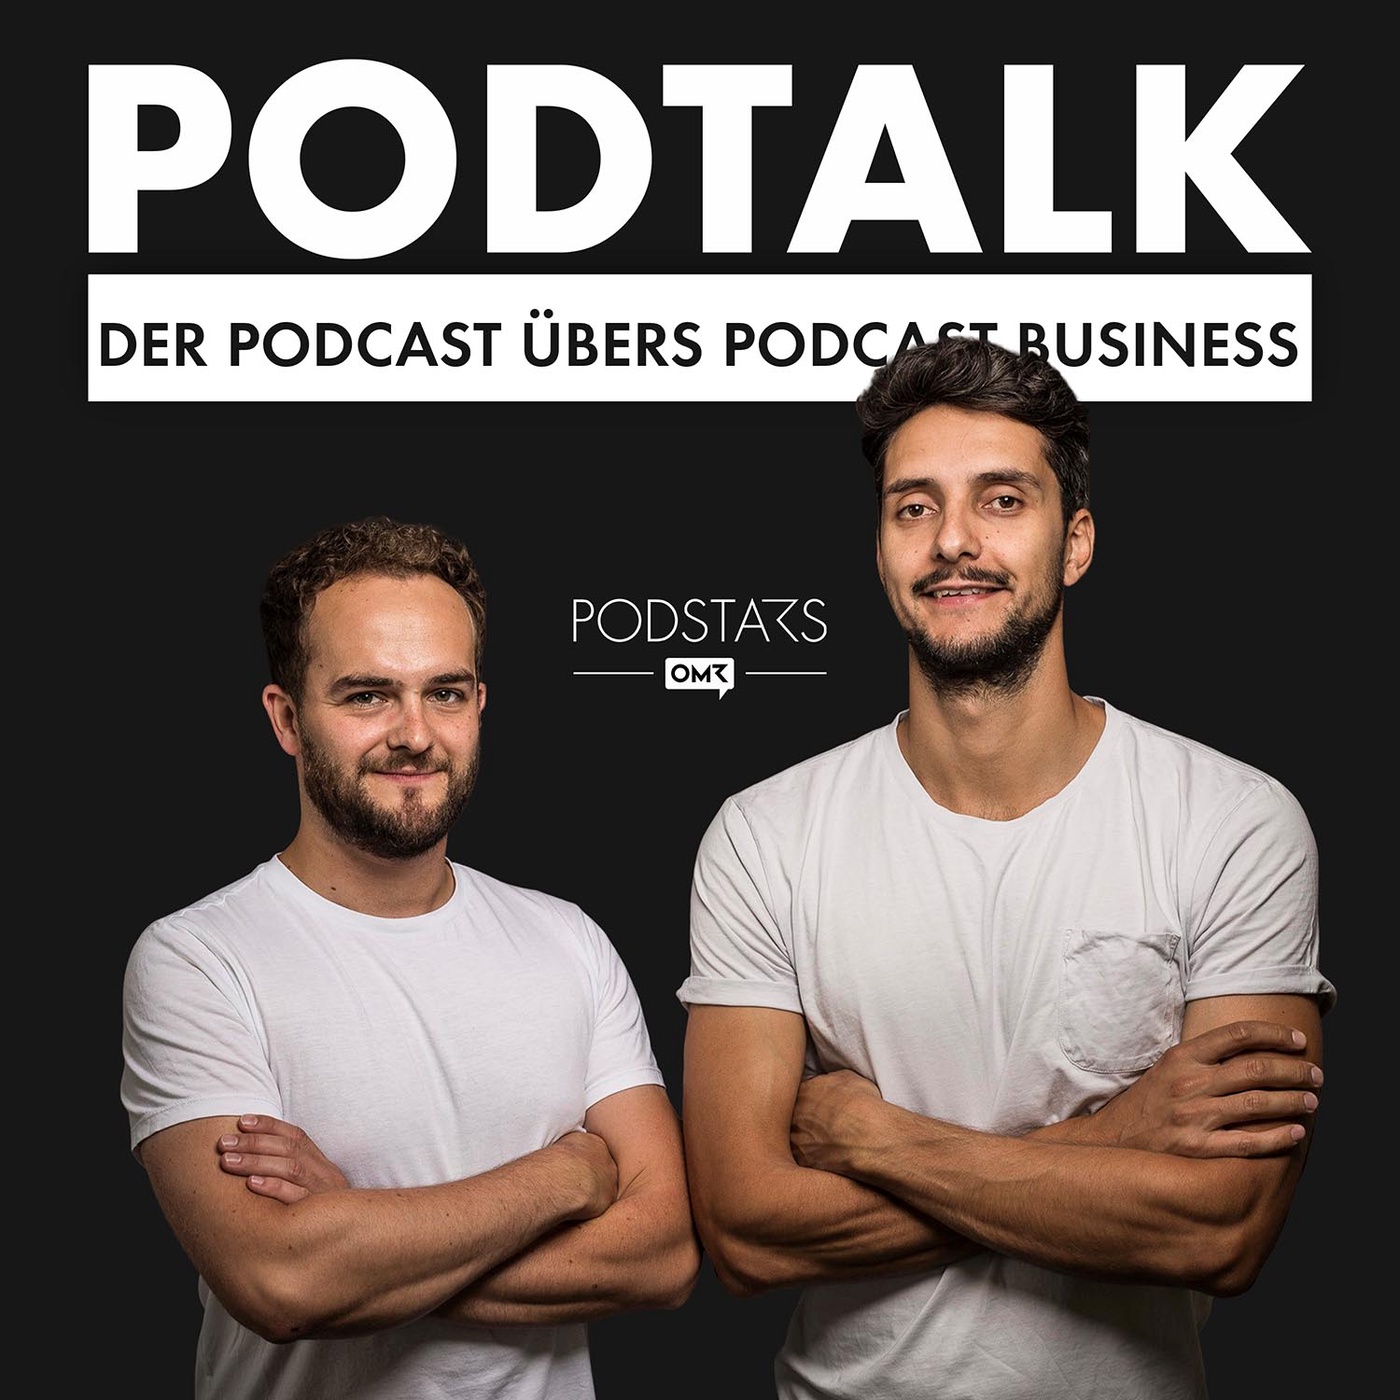 PodTalk #43: Die Podcast-Strategie der Süddeutschen Zeitung - mit Laura Terberl